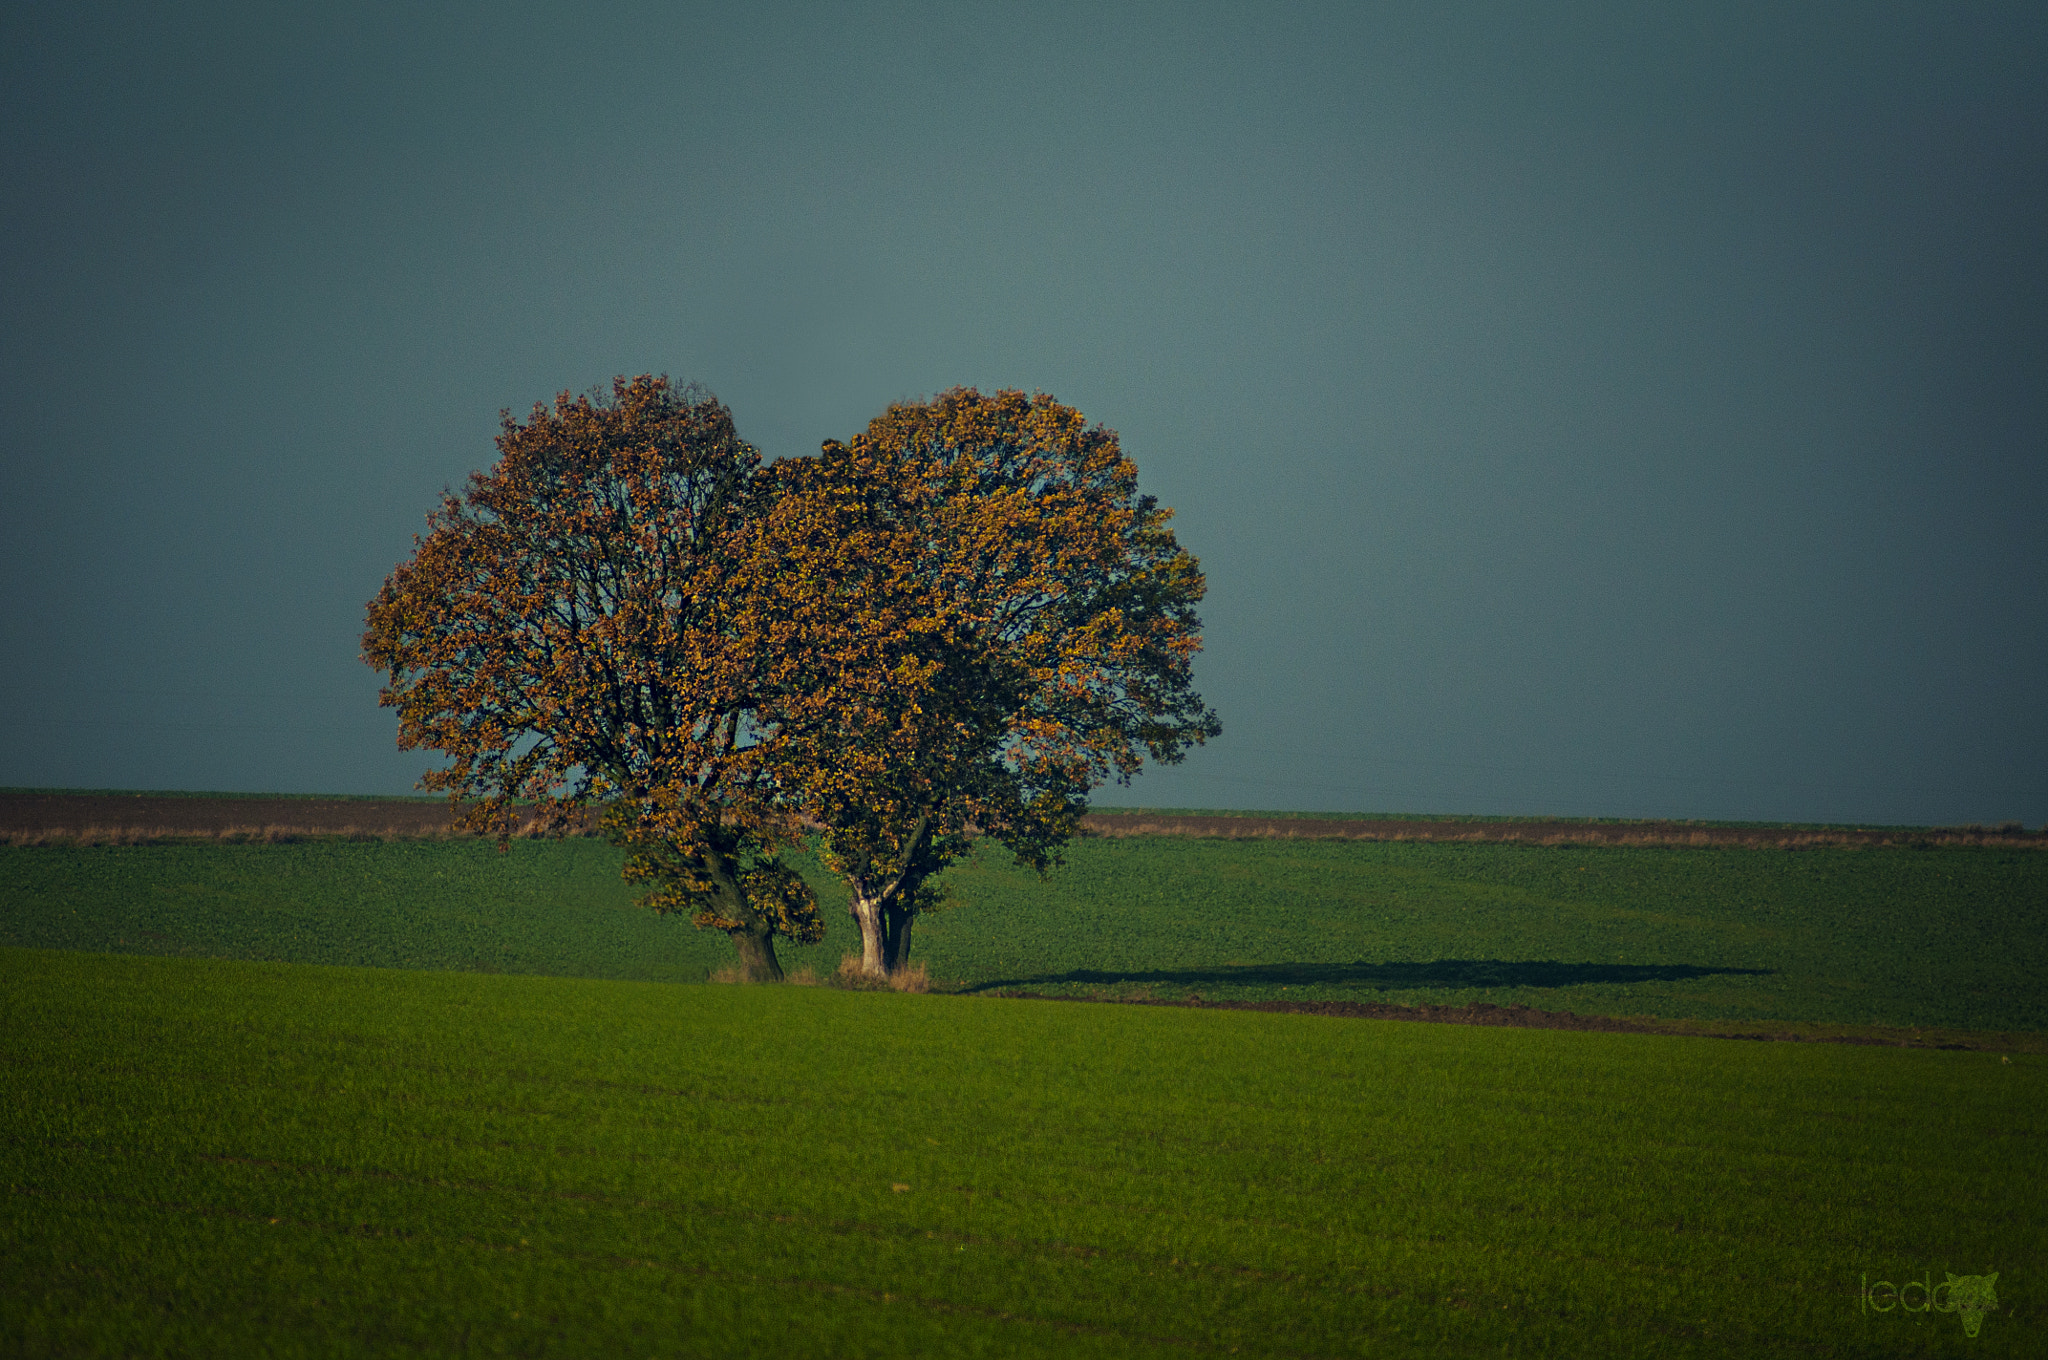 AF Zoom-Nikkor 70-210mm f/4 sample photo. Love trees photography